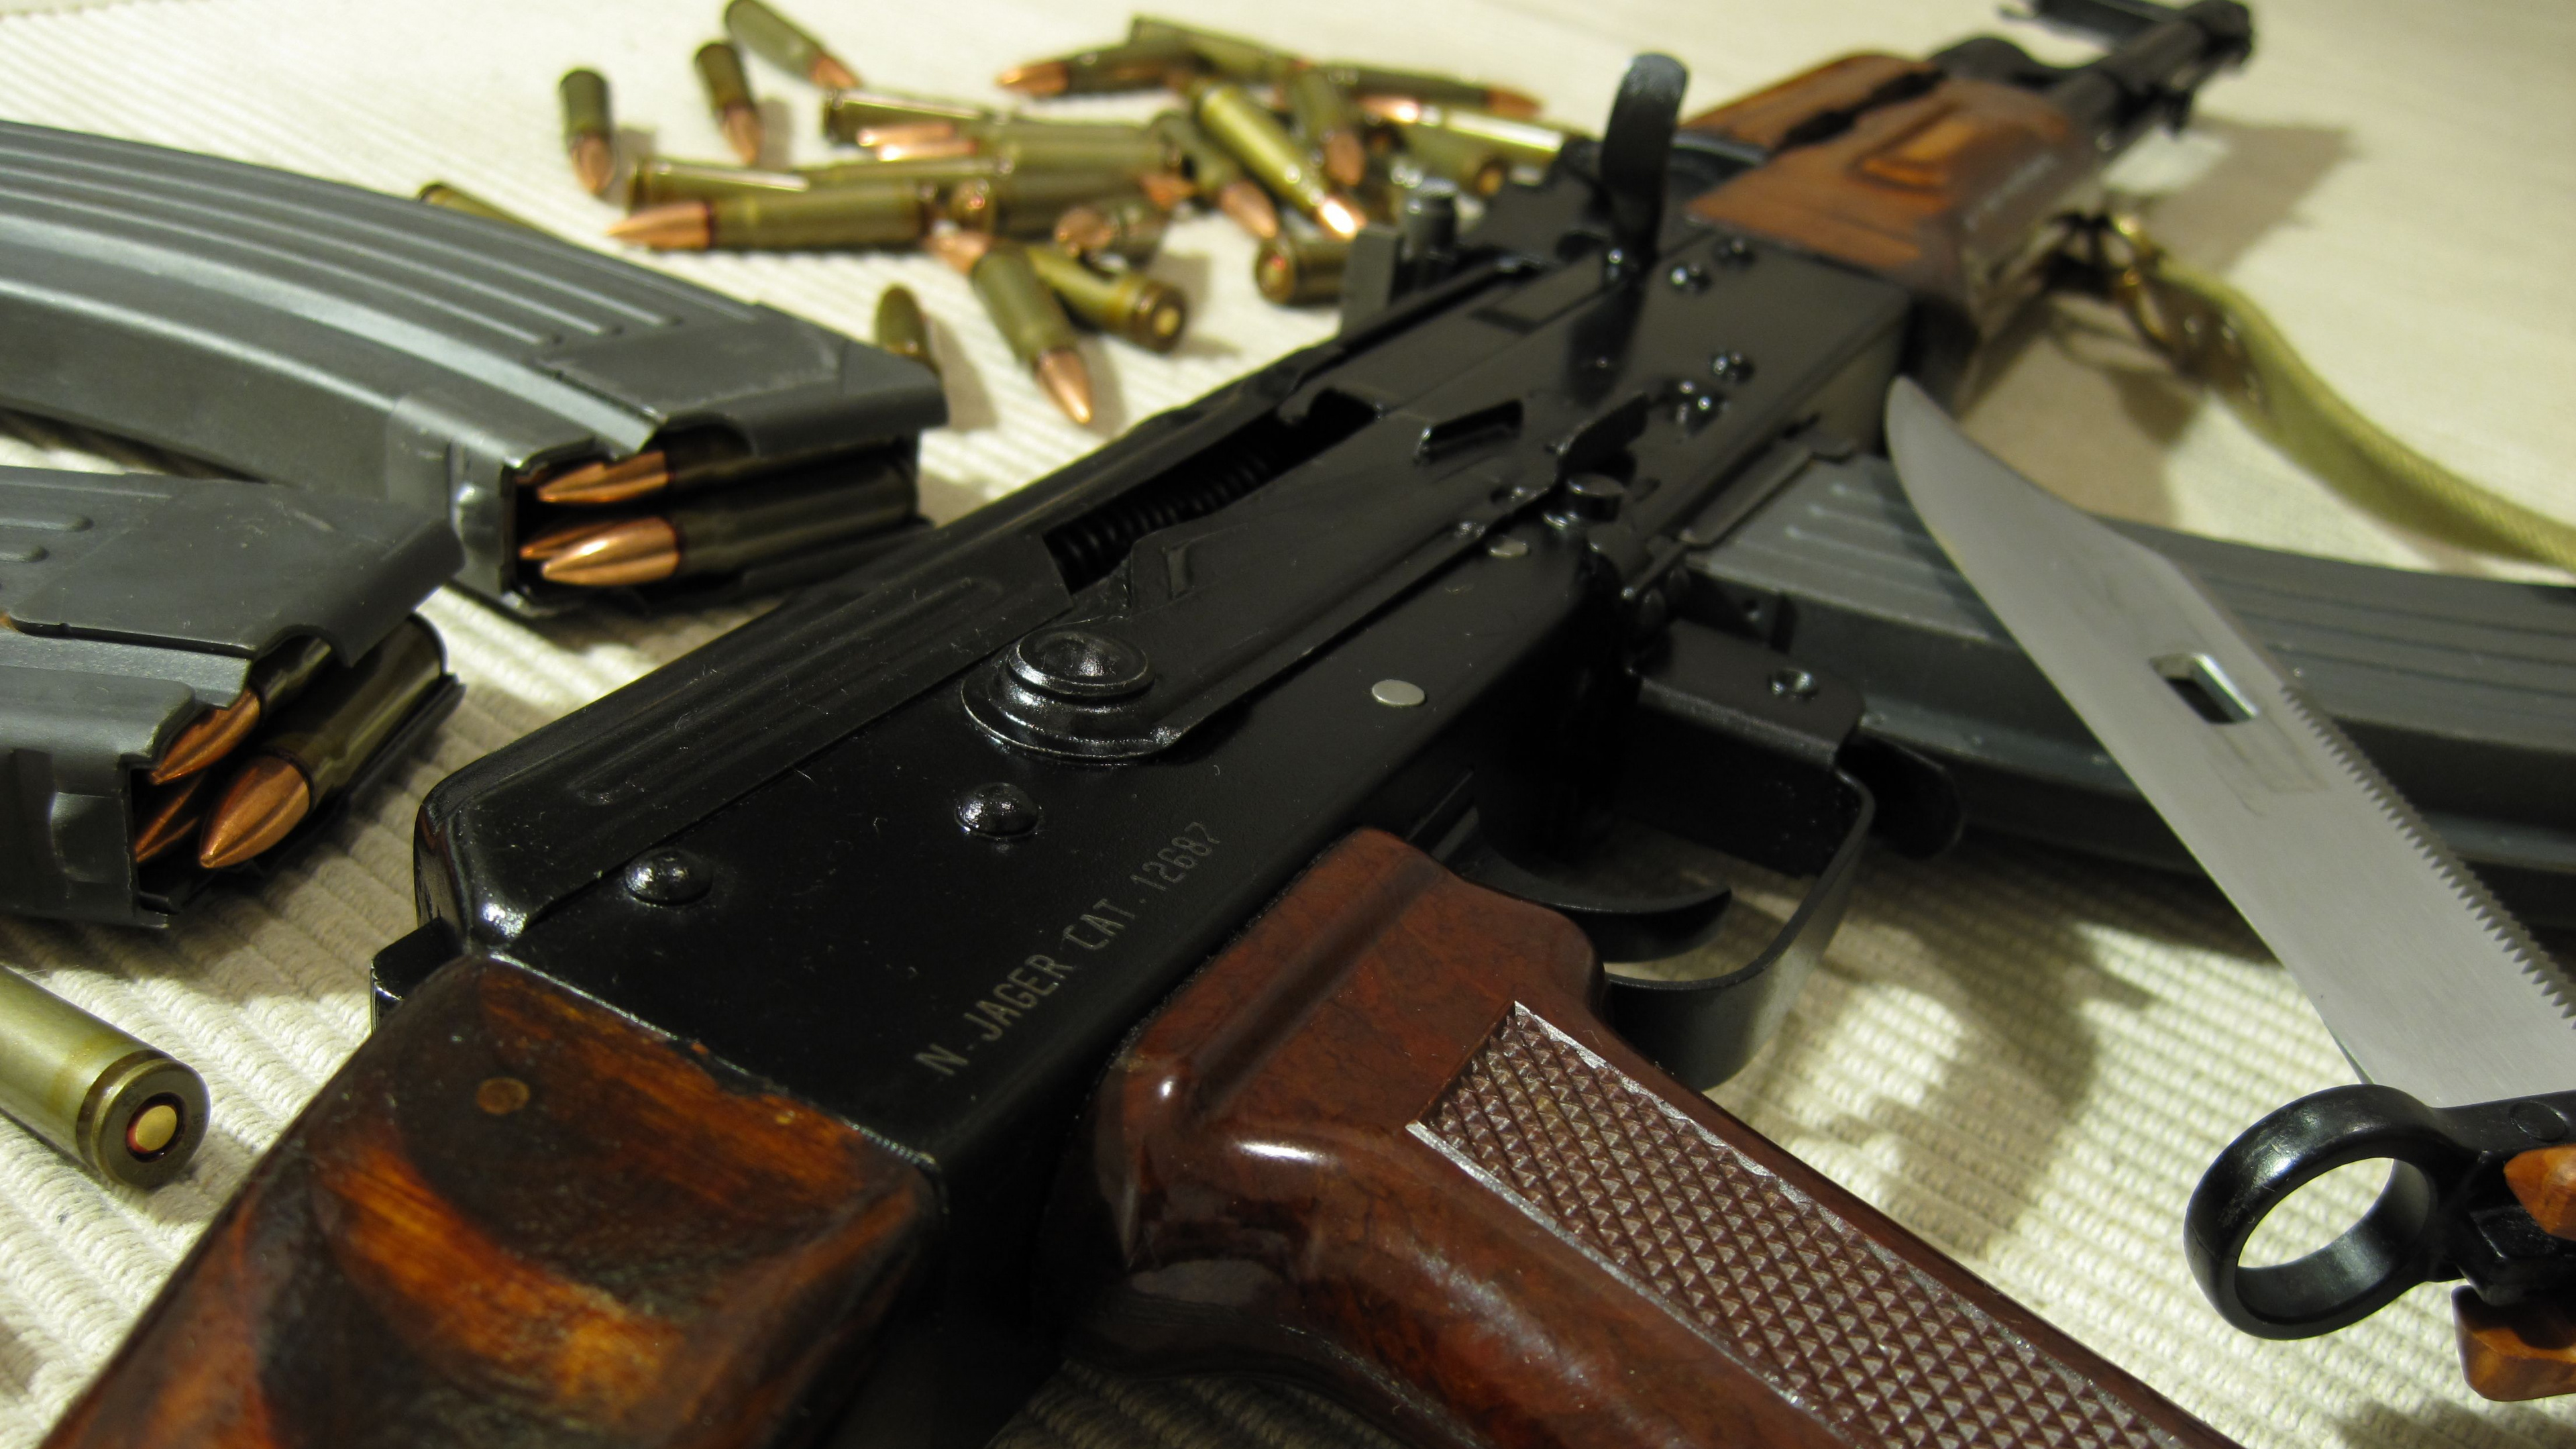 Akm, Feuerwaffe, Trigger, Airsoft Gun, Luftgewehr. Wallpaper in 3840x2160 Resolution